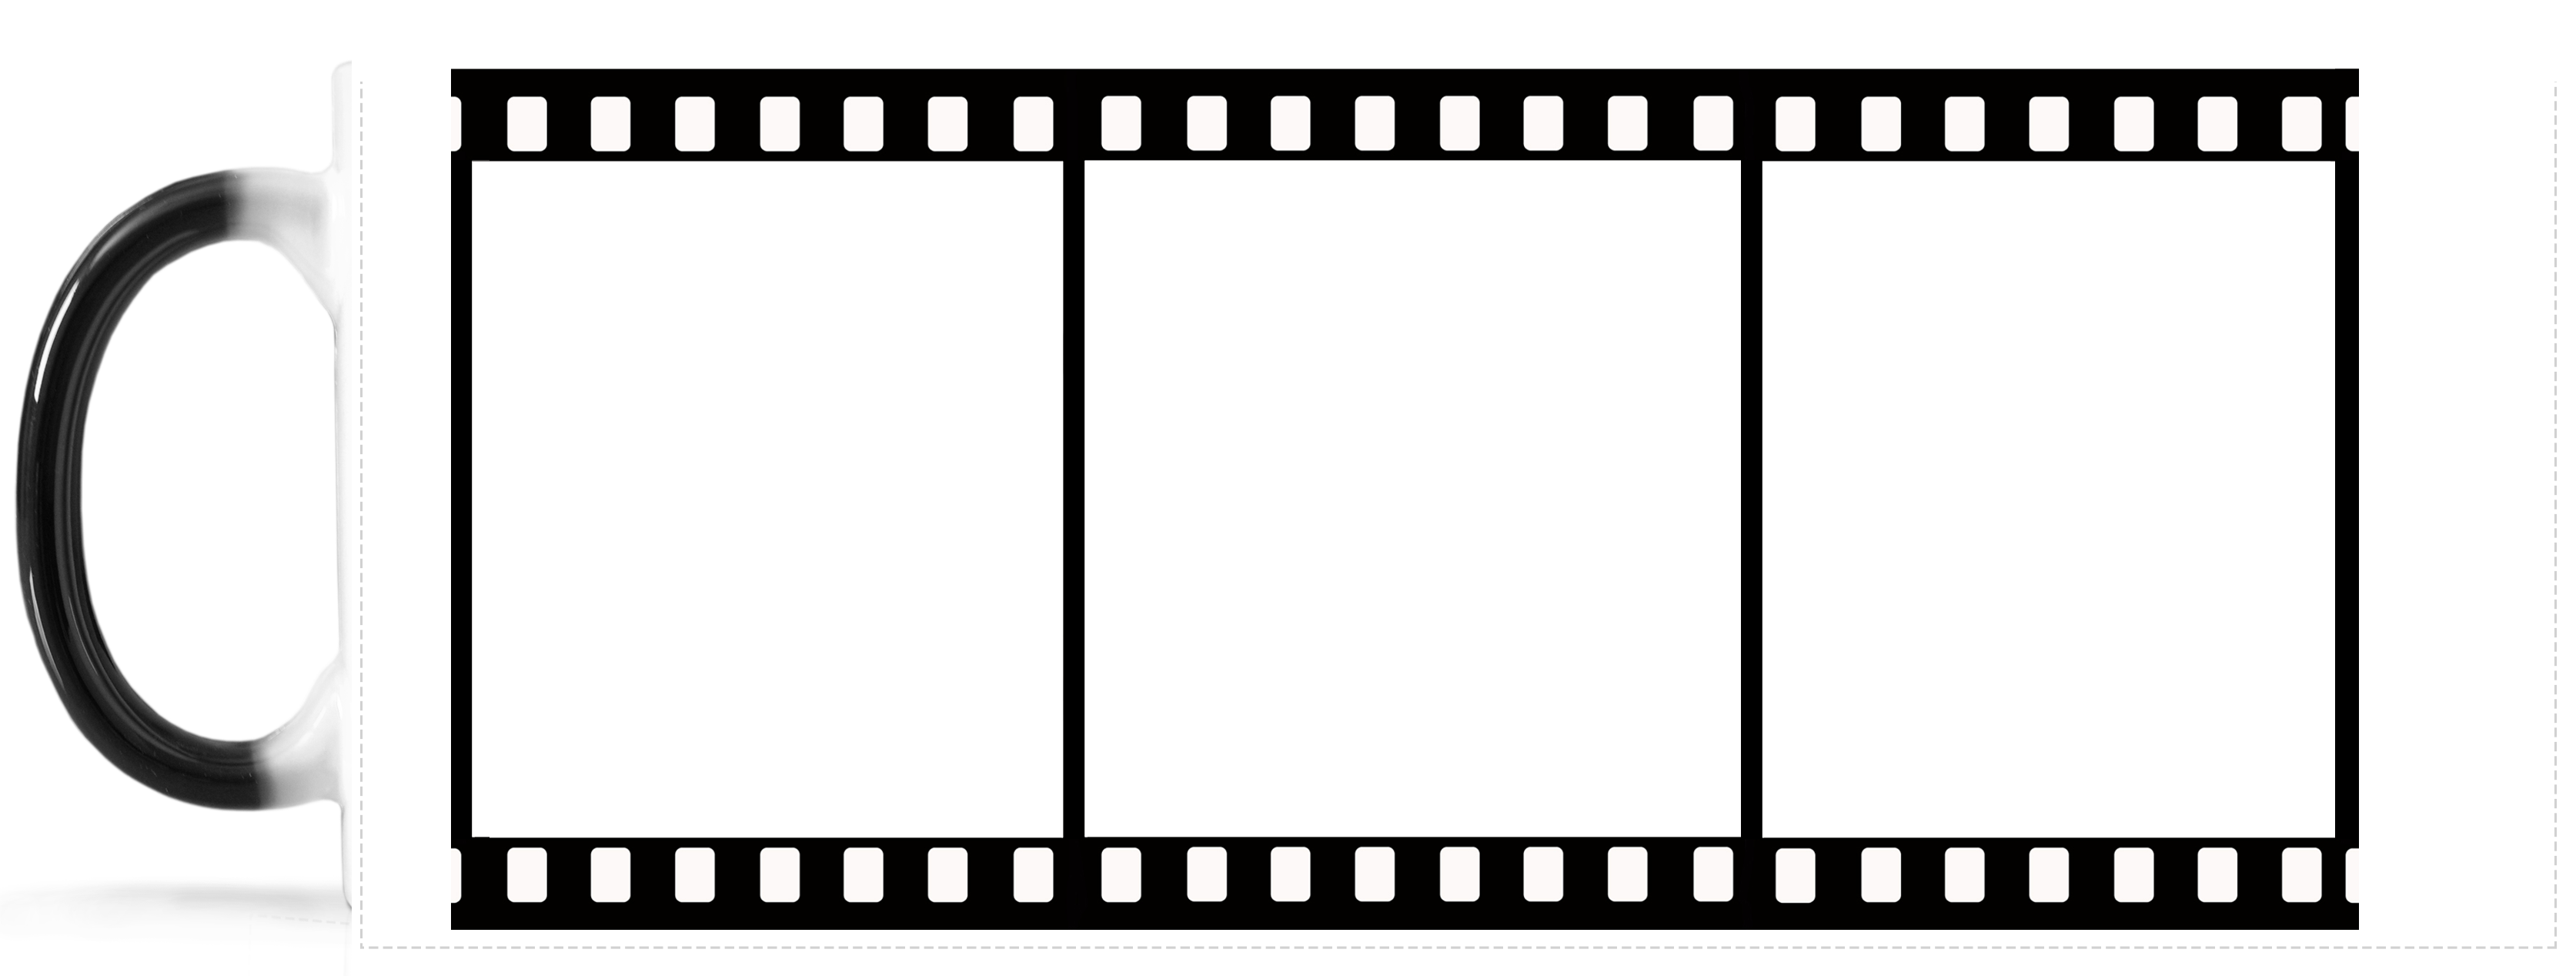 Film Reel Movie projector Cinema - filmstrip png download - 1320*990